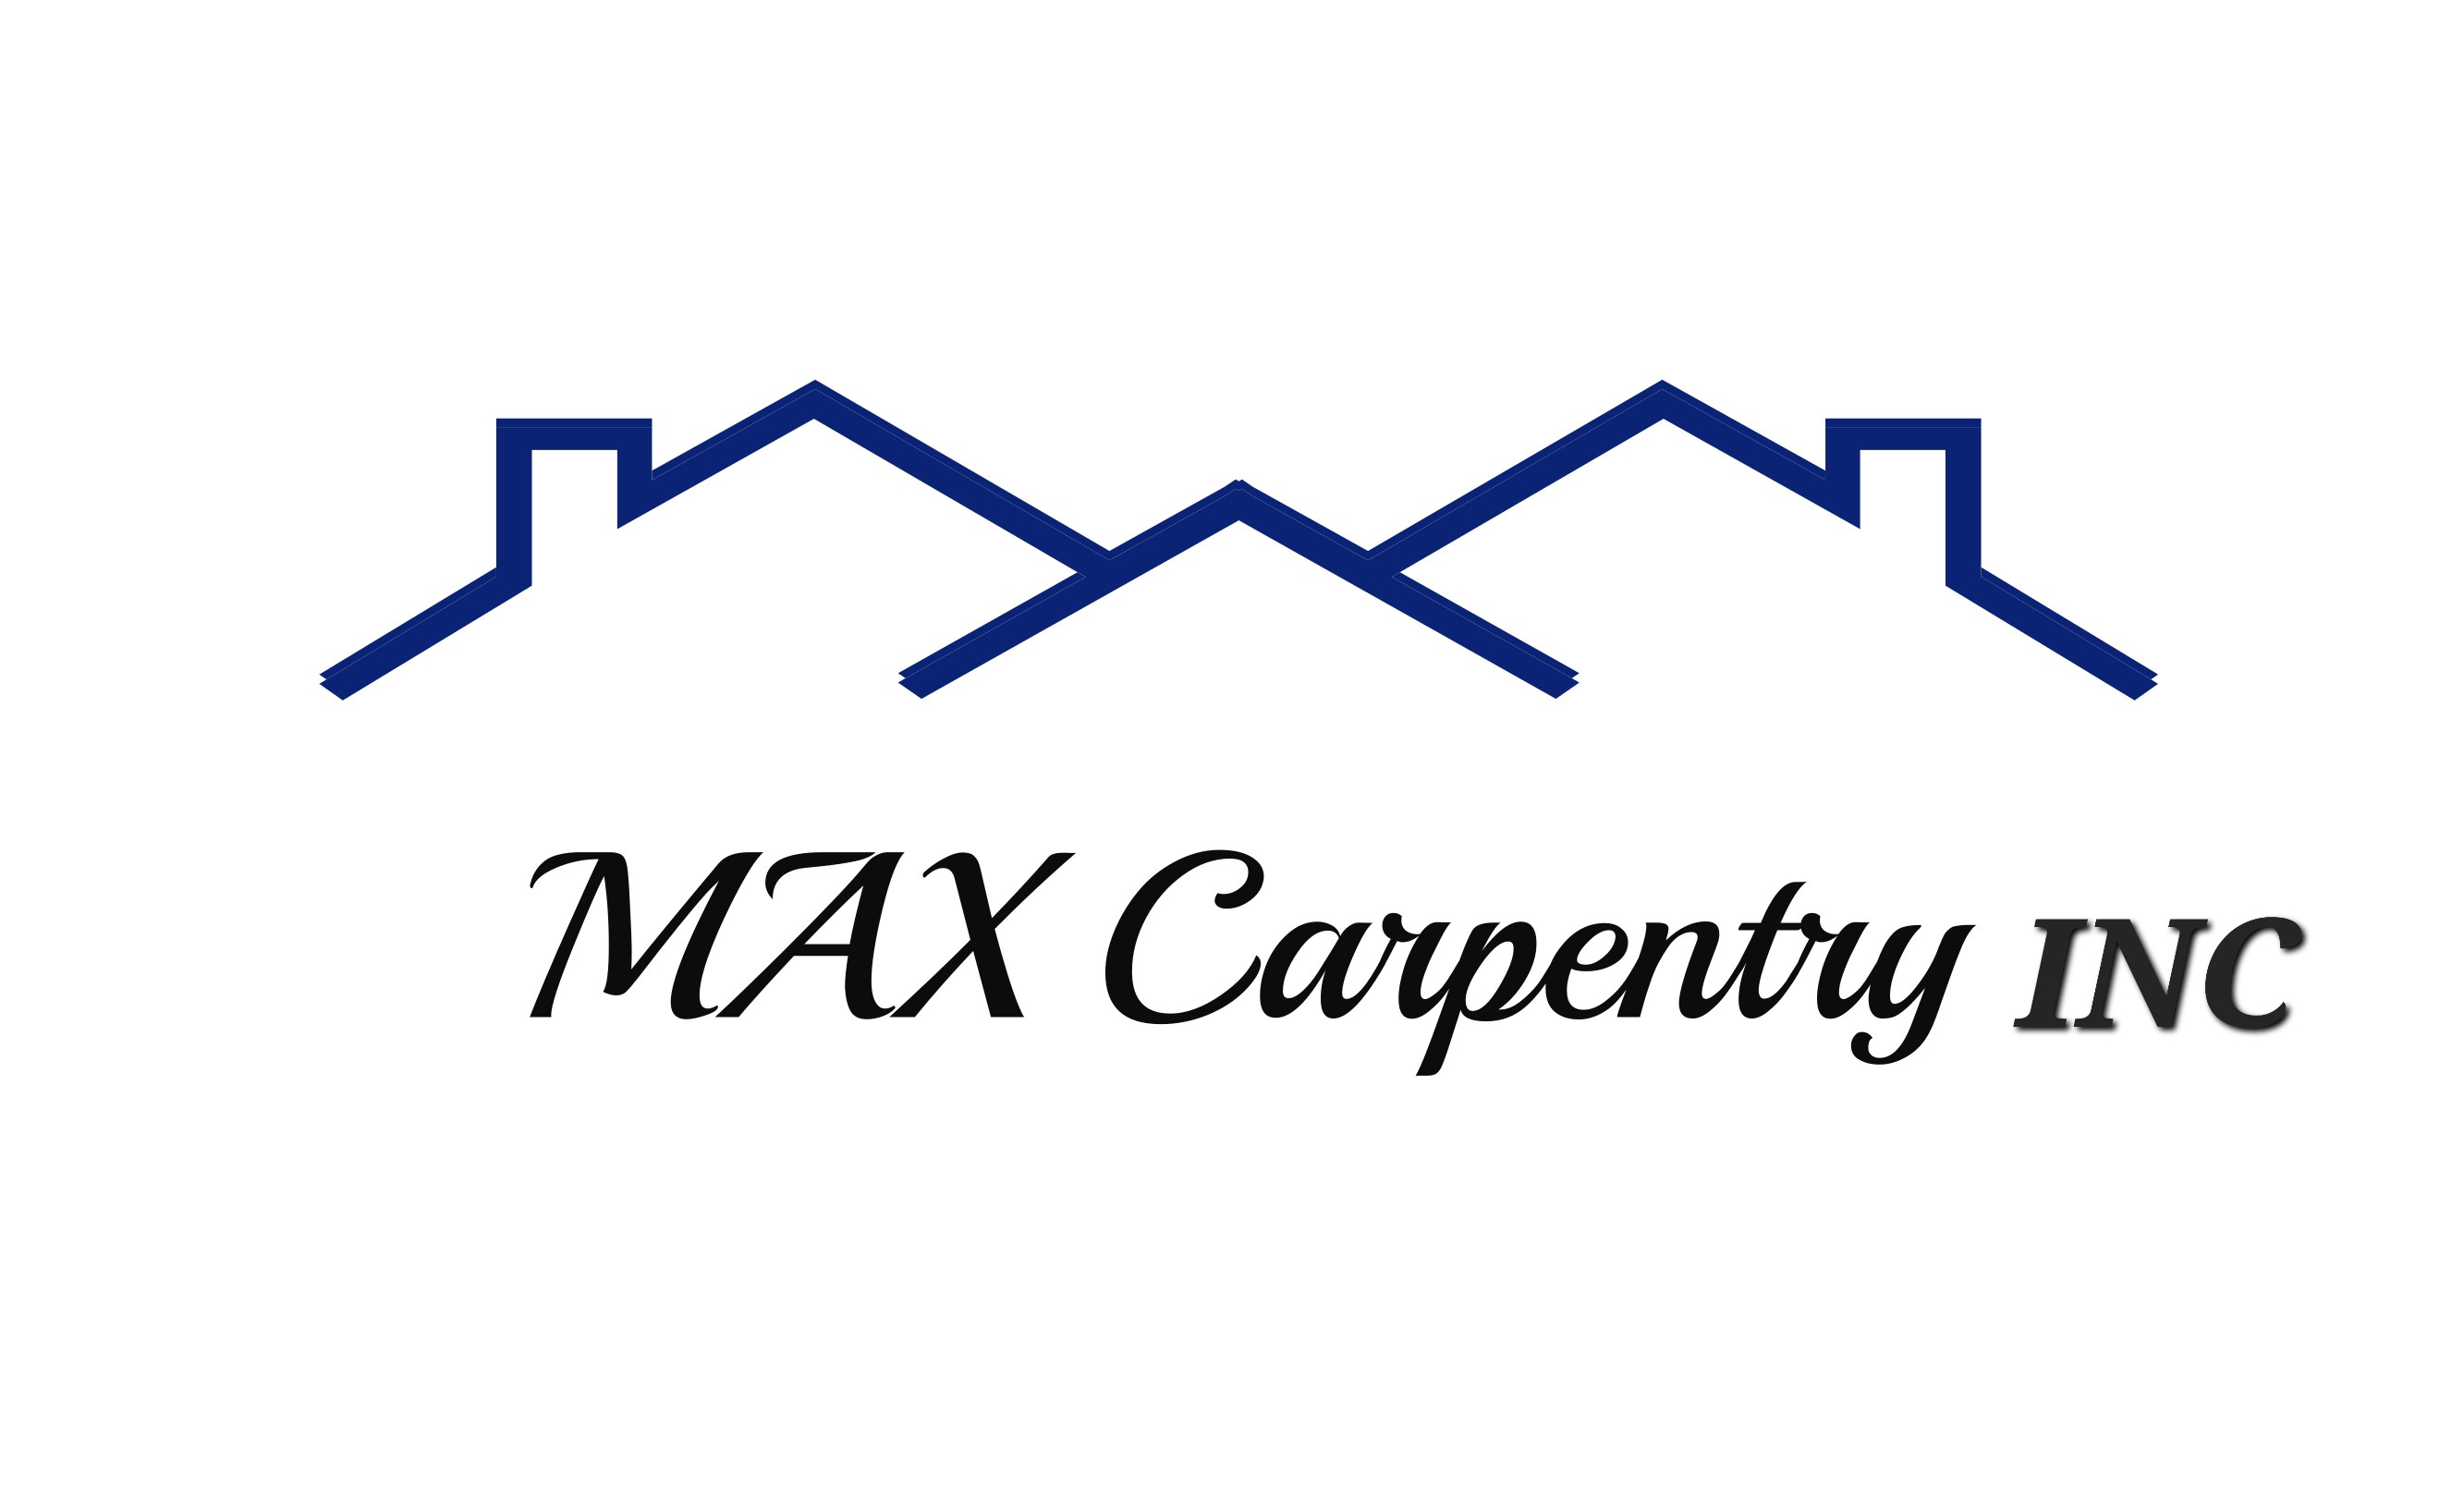 MAX Carpentry